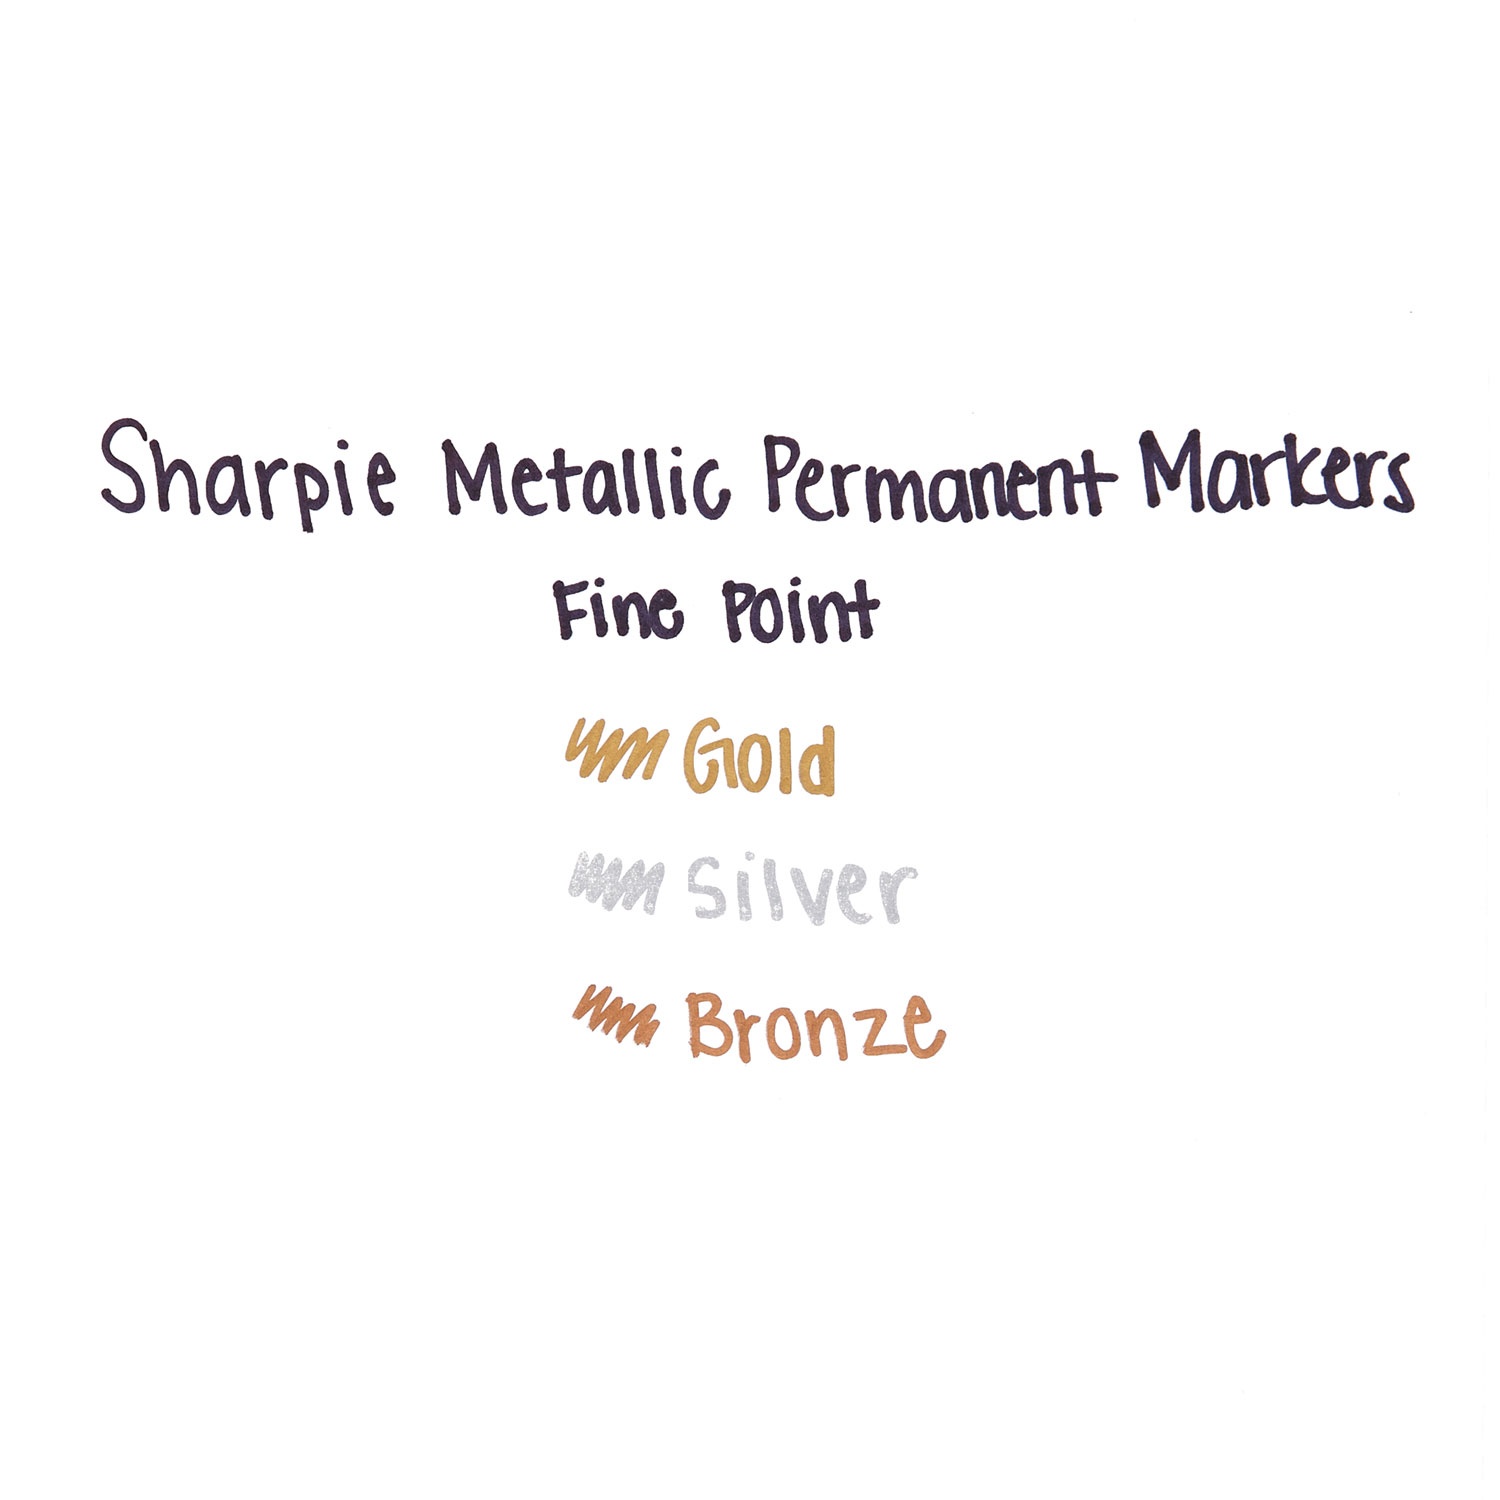 Sharpie Metallic Permanent Marker, Medium Chisel Tip, Gold, Dozen